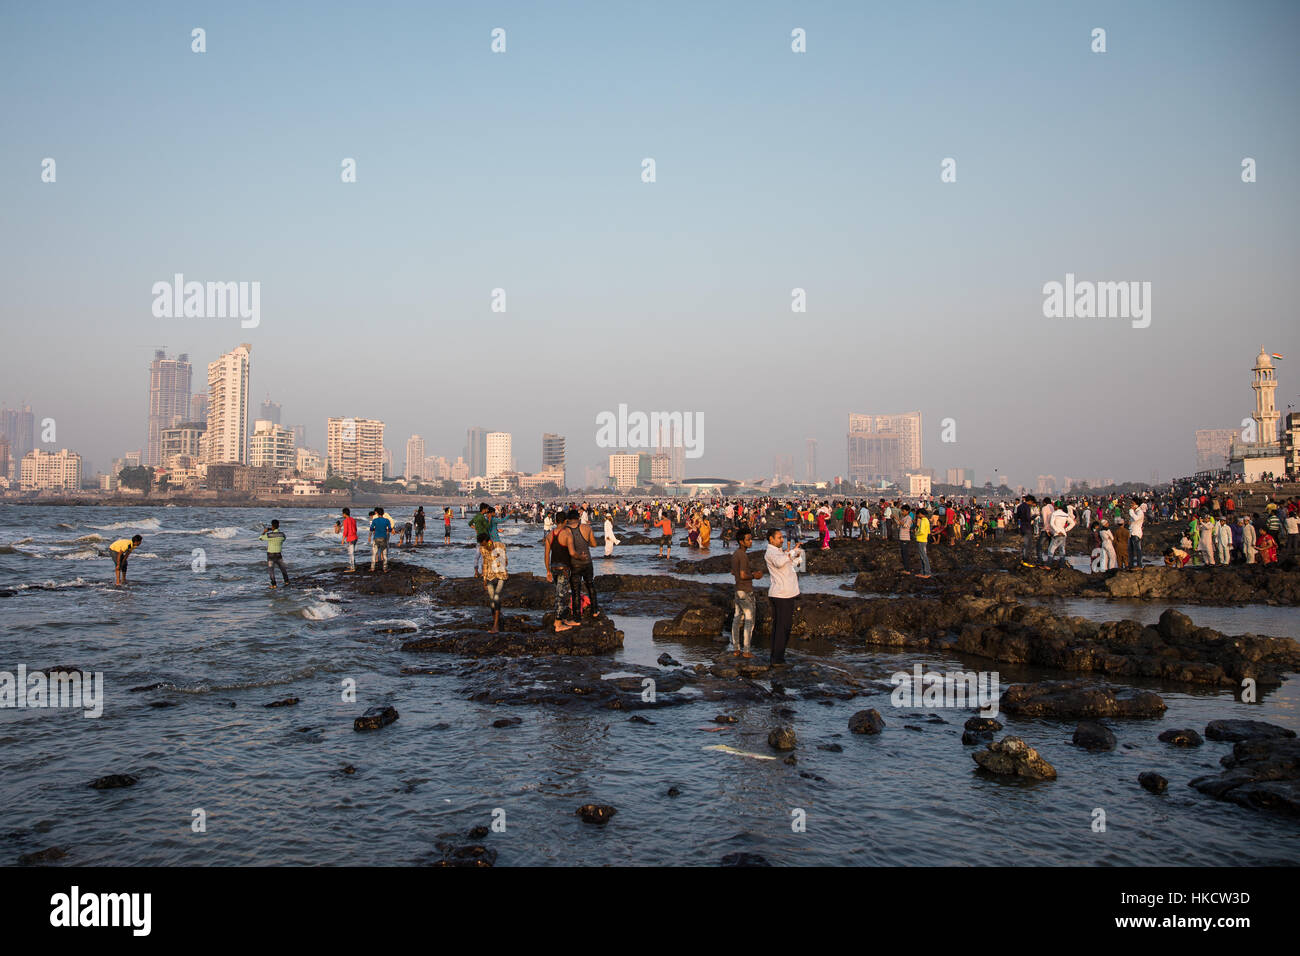 Menschen spielen auf die Felsen, die umgeben von Haji Ali Dargah, einer islamischen Moschee und Grab in Mumbai (Bombay), Indien. Stockfoto